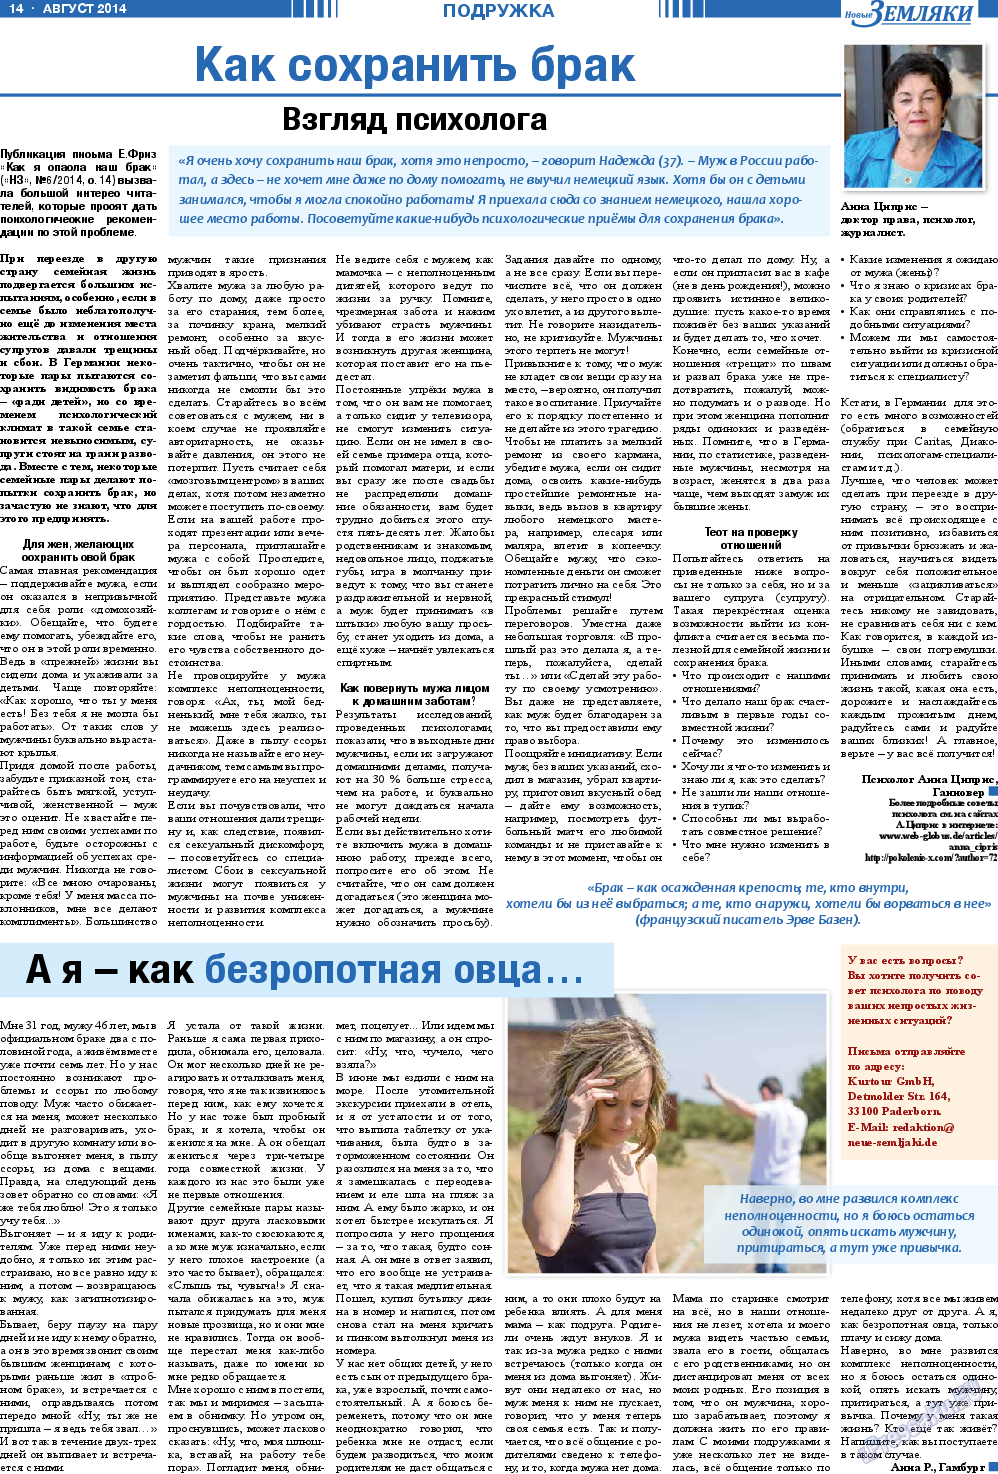 Новые Земляки, газета. 2014 №8 стр.14